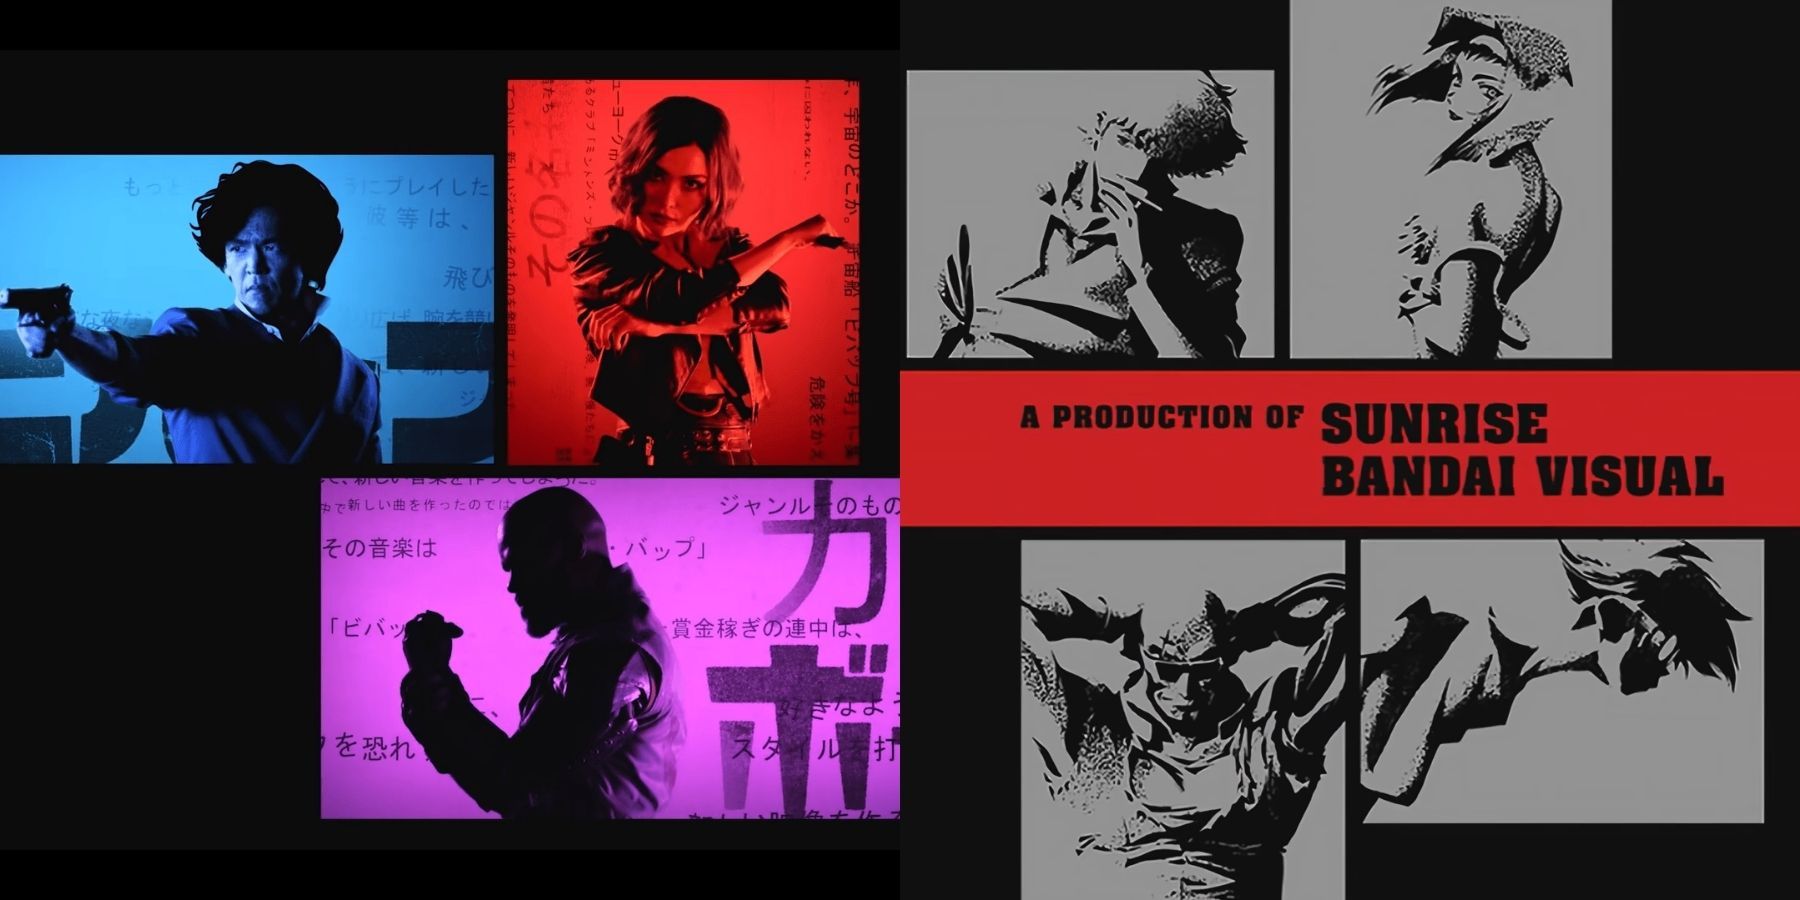 Ver los créditos de apertura de Cowboy Bebop de acción en vivo de Netflix